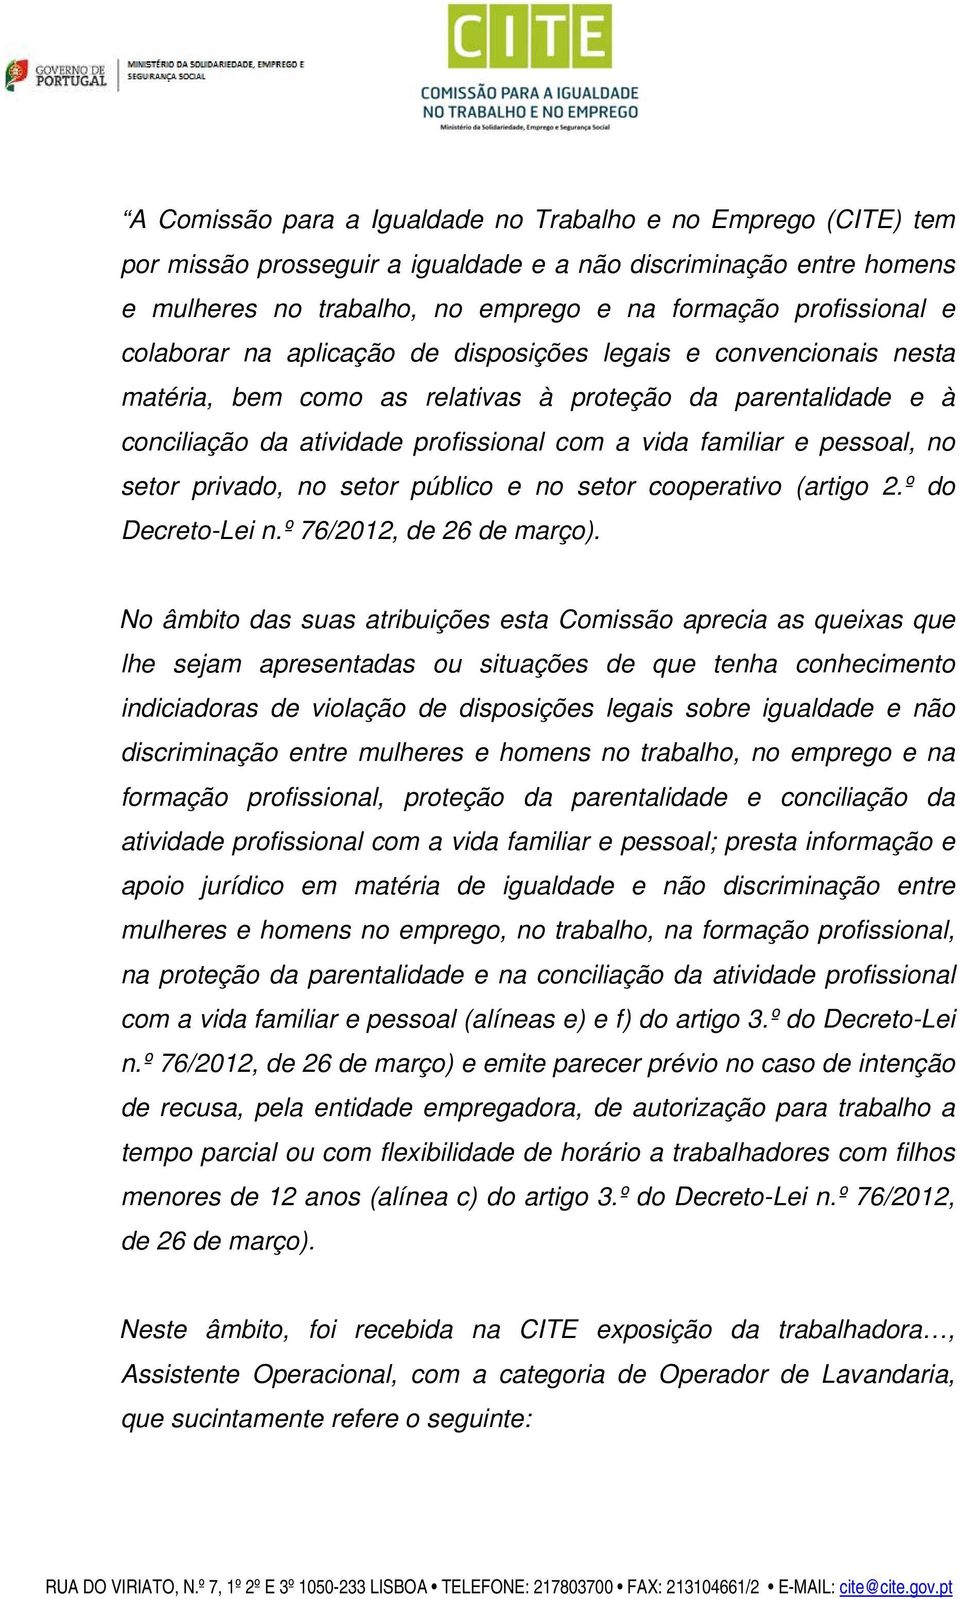 no setor privado, no setor público e no setor cooperativo (artigo 2.º do Decreto-Lei n.º 76/2012, de 26 de março).